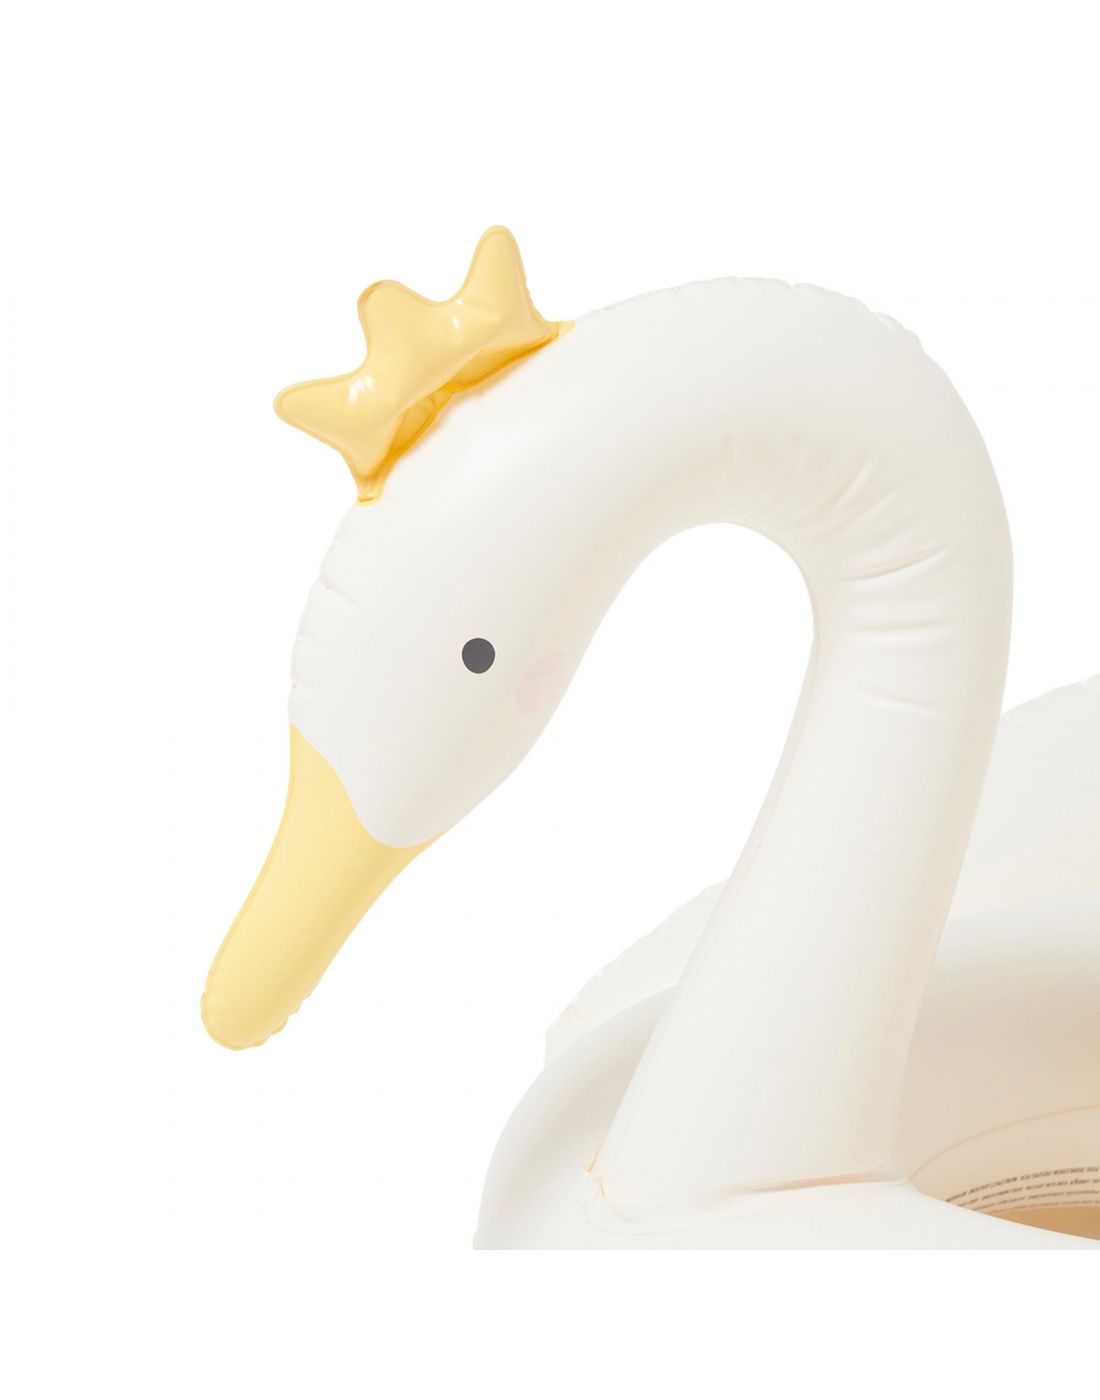 SunnyLife Kids Pool Ring Princess Swan Multi